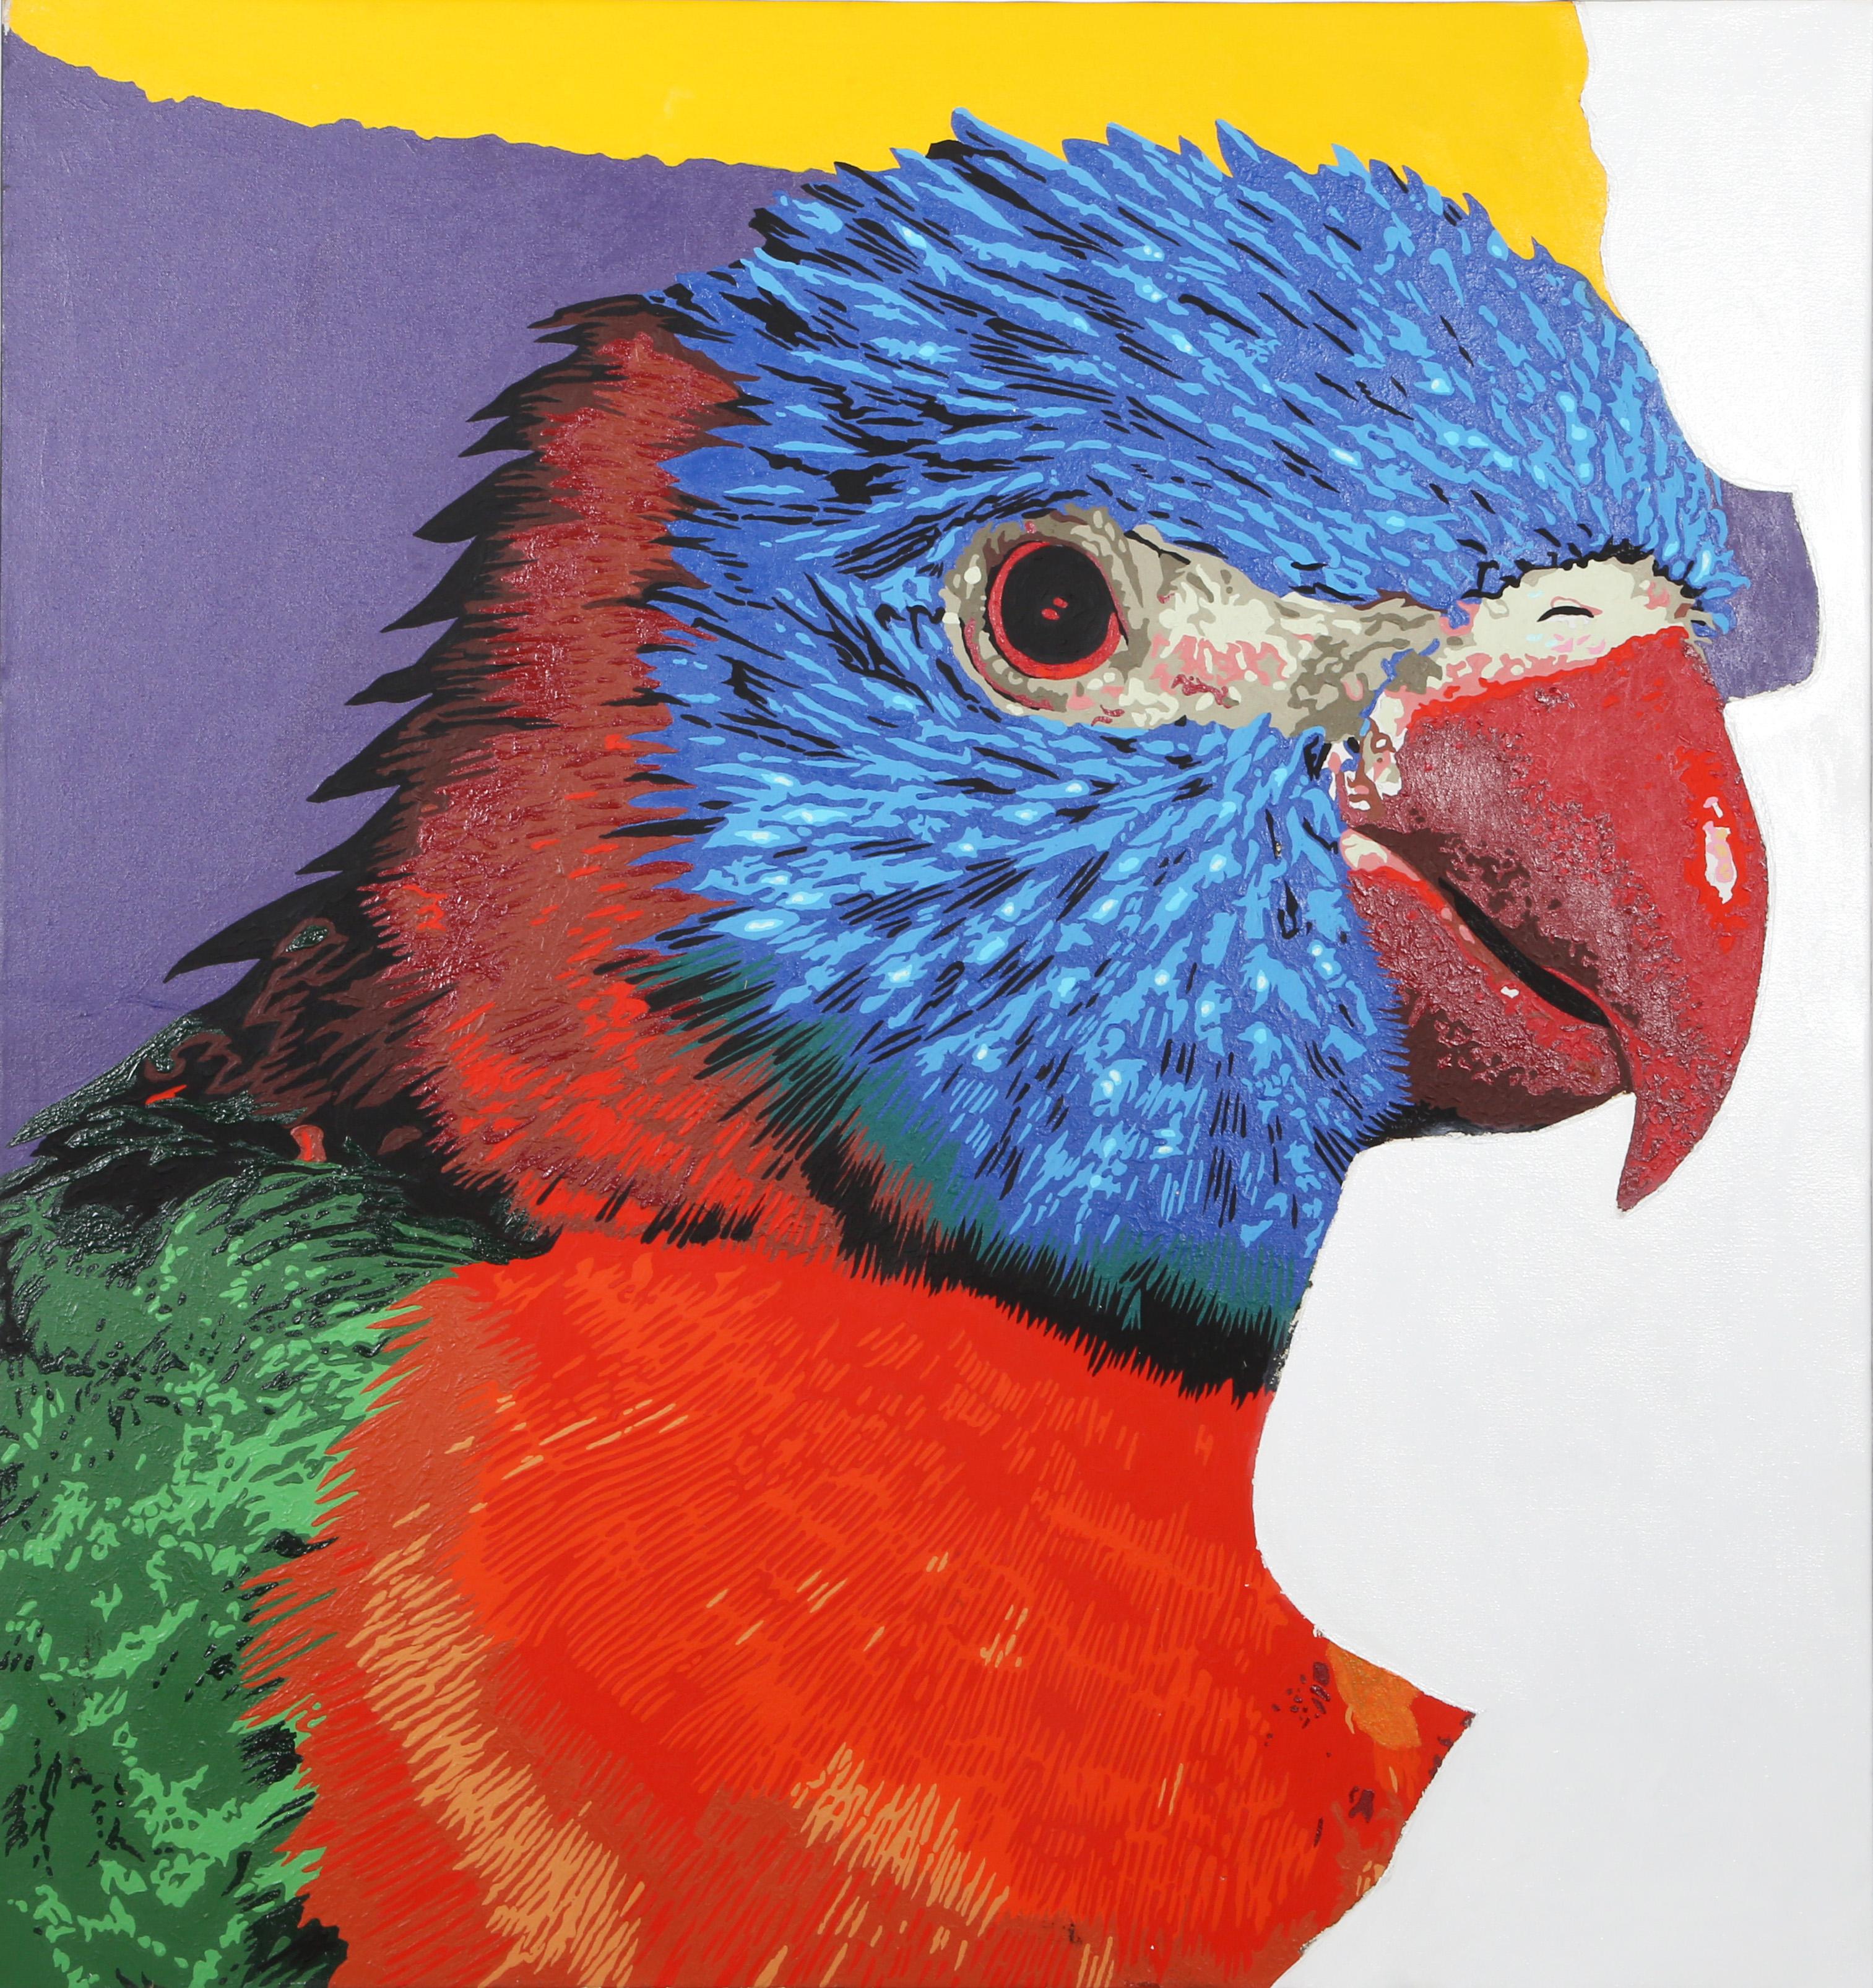 Papagei
Michael Knigin, Amerikaner (1942-2011)
Acryl auf Leinwand
Größe: 39,5 x 37,25 in. (100,33 x 94,62 cm)

Eine Nahaufnahme eines Regenbogenlori, einer Papageienart aus Australien. Seine kräftigen Farben sind sauber voneinander getrennt und